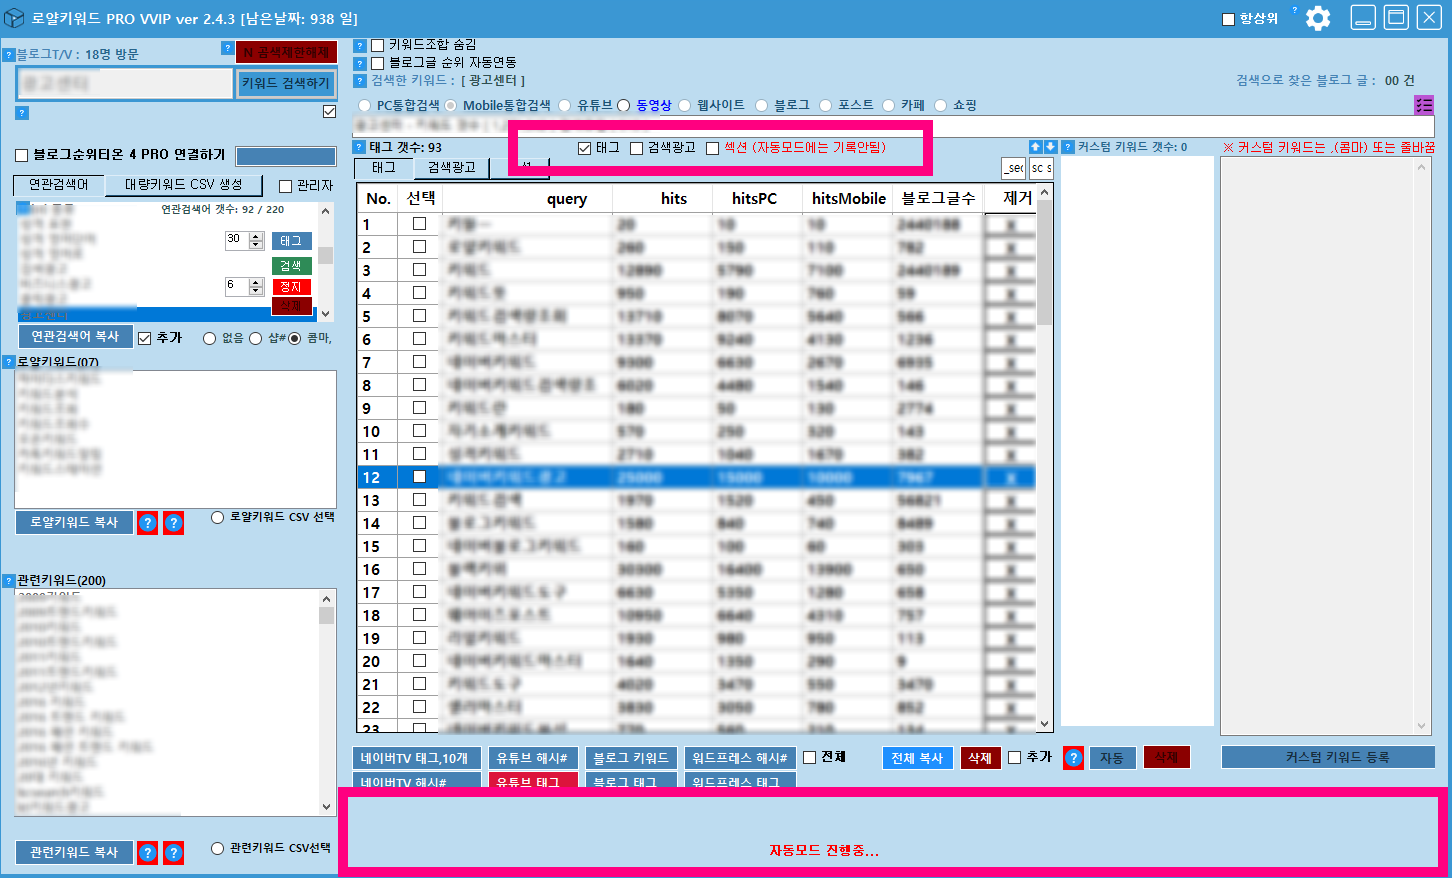 로얄키워드 PRO VVIP 2.4.3 업데이트 메모리부족 현상 임시수정